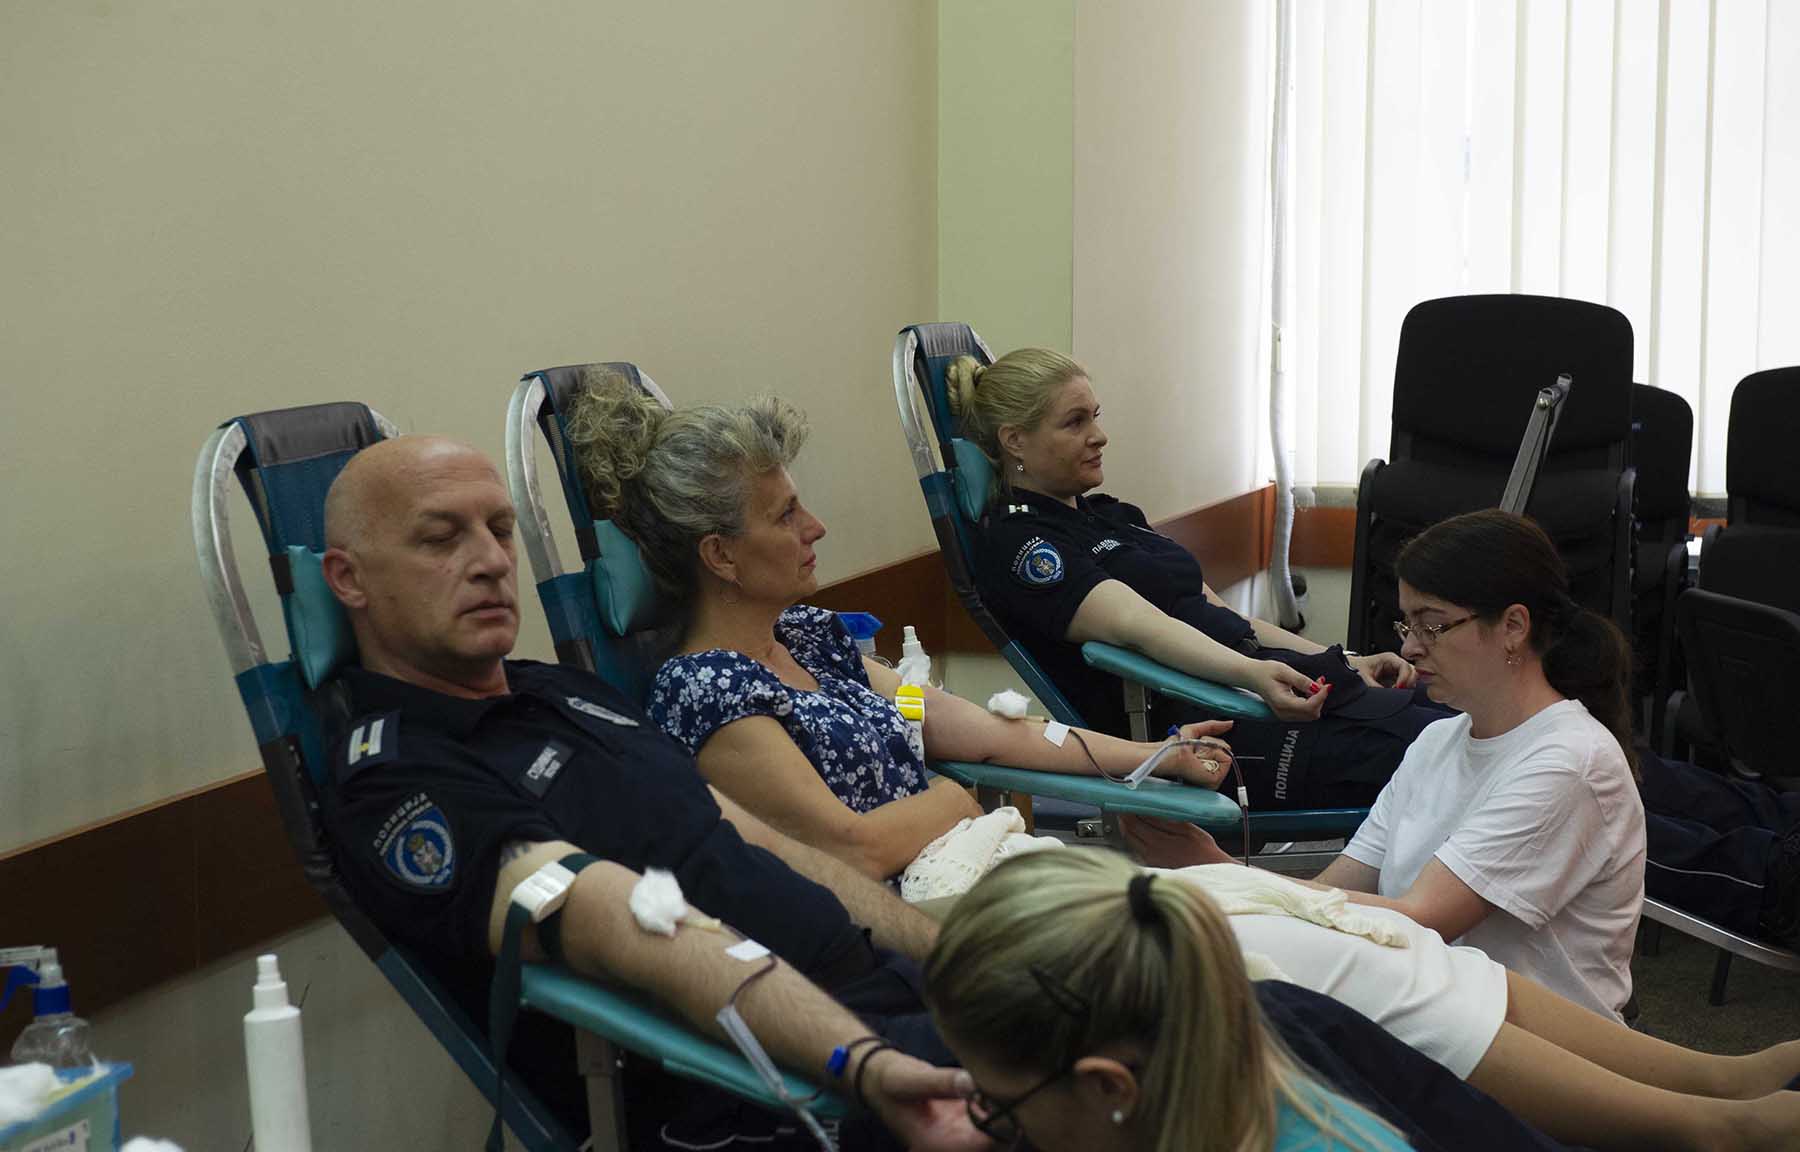  Великим одзивом акцији добровољног давања крви припадници МУП-а још једном показали да су велики људи